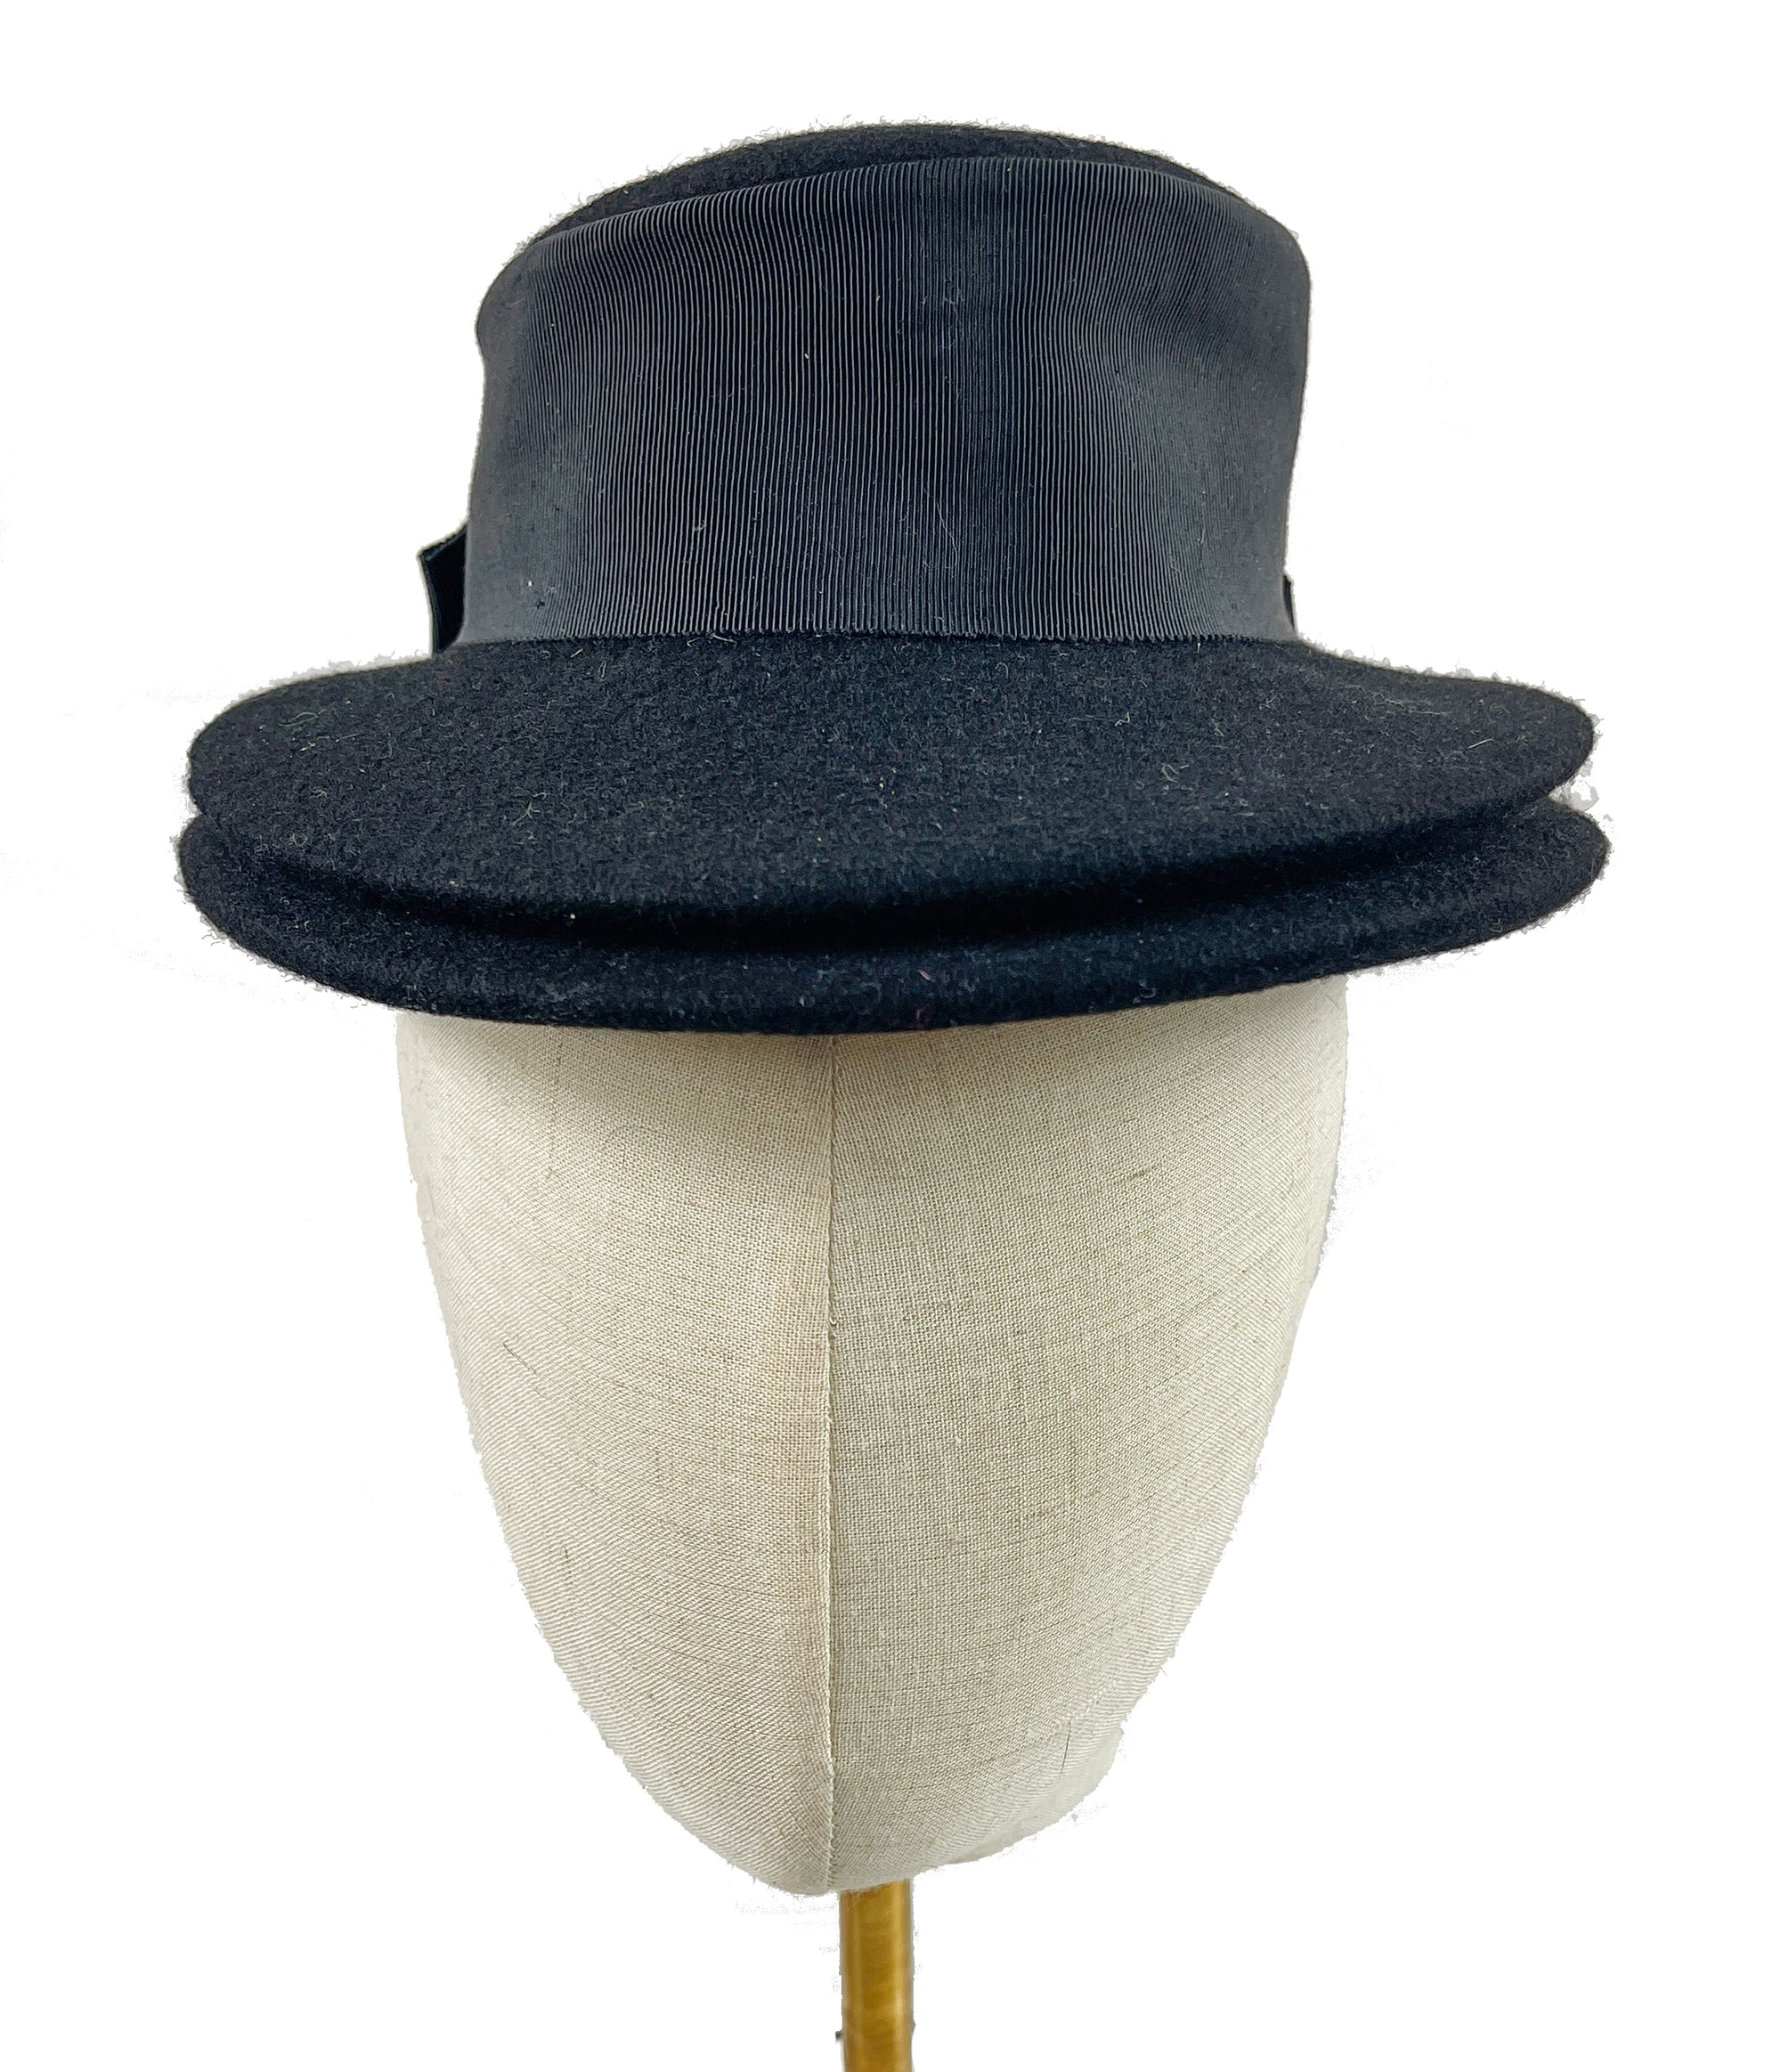 Vintage Bon Marche Black Felt Tilted Fascinator Hat